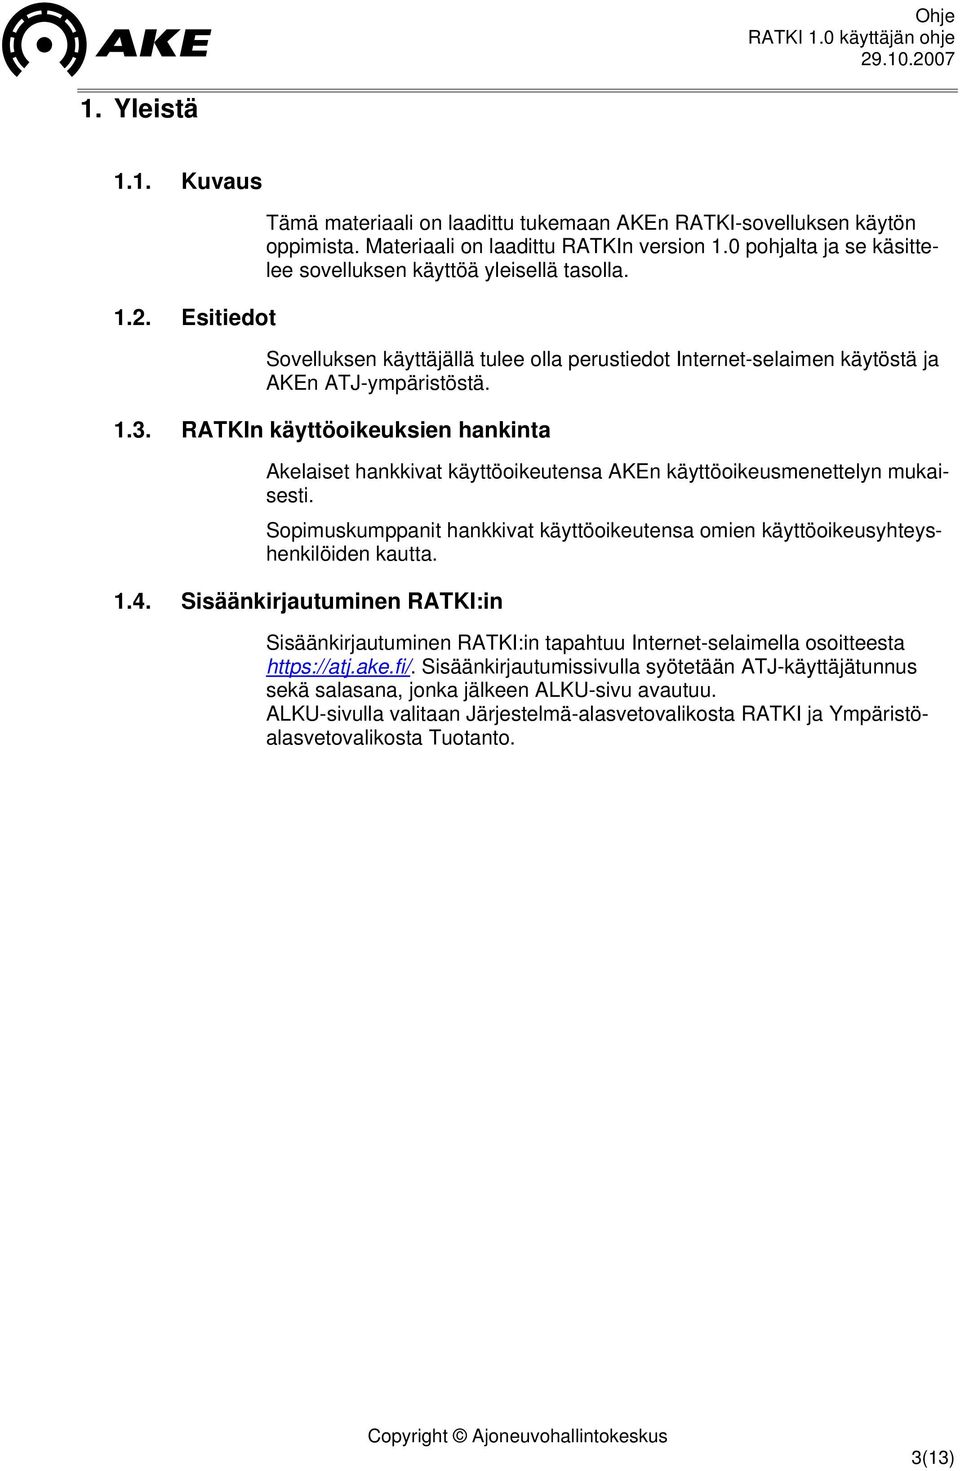 RATKIn käyttöoikeuksien hankinta Akelaiset hankkivat käyttöoikeutensa AKEn käyttöoikeusmenettelyn mukaisesti. Sopimuskumppanit hankkivat käyttöoikeutensa omien käyttöoikeusyhteyshenkilöiden kautta. 1.